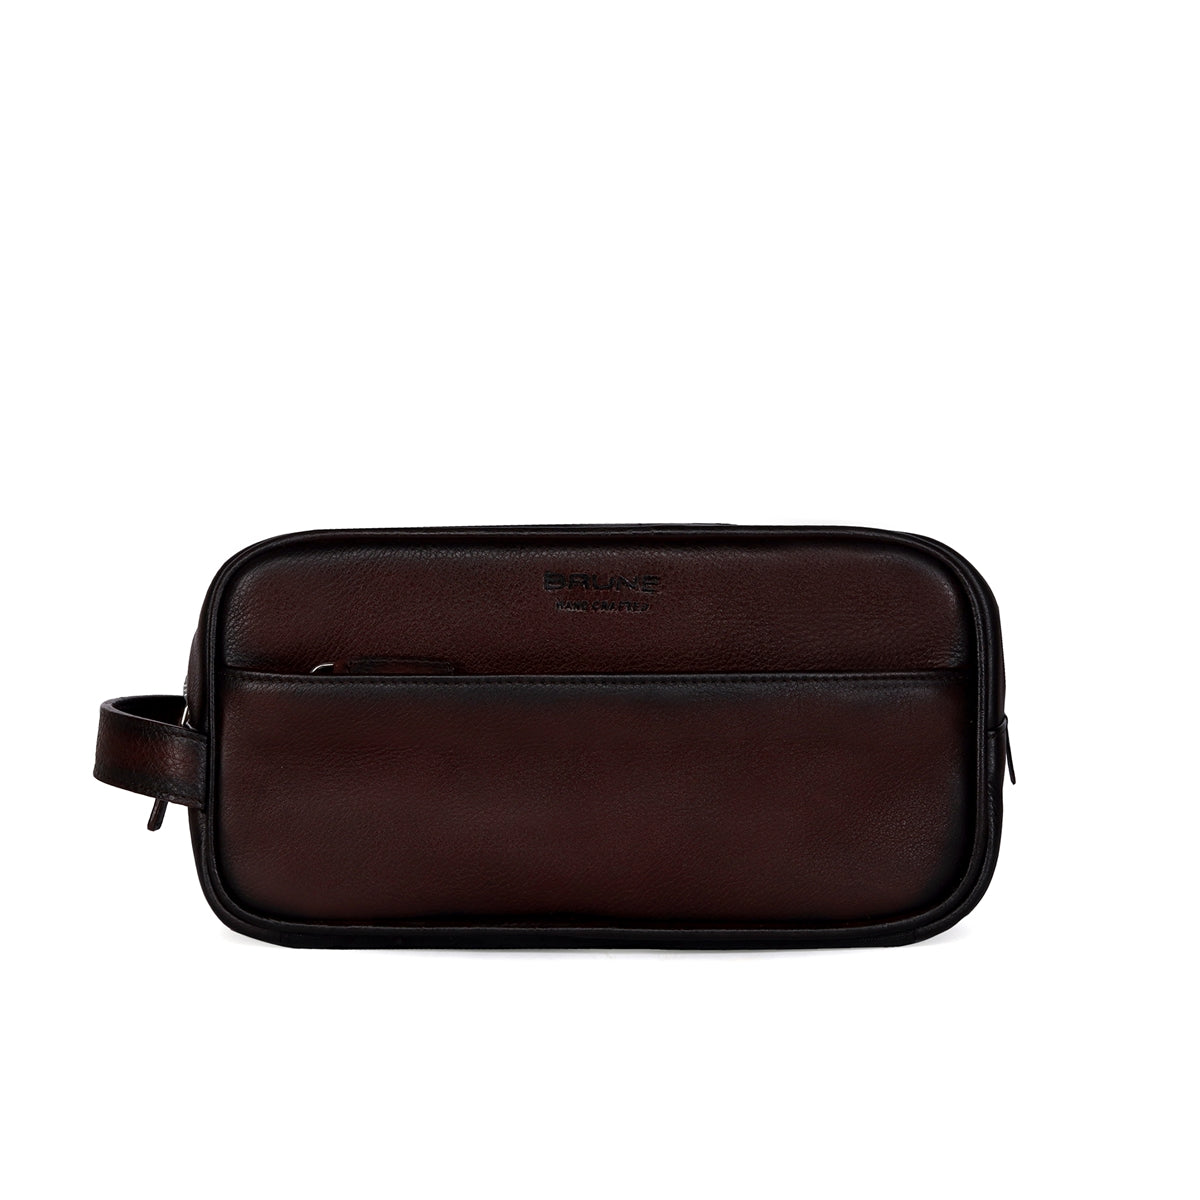 Unisex Dark Brown Genuine Leather Toiletry/Slim Kit Travel Bag